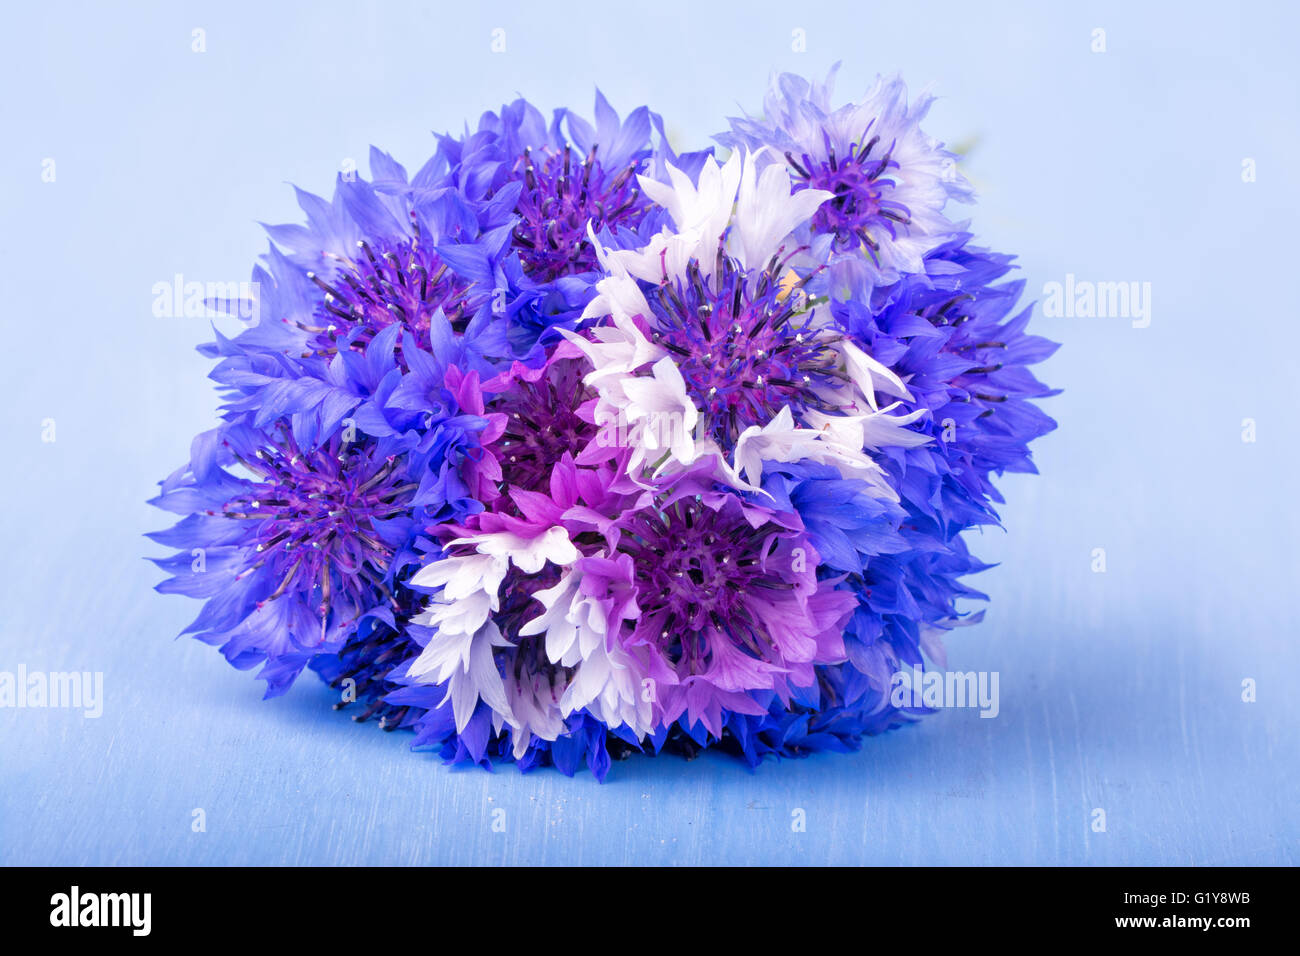 Bündel von Kornblumen in blau, lila und weiß auf blauem Hintergrund sehr leicht Stockfoto